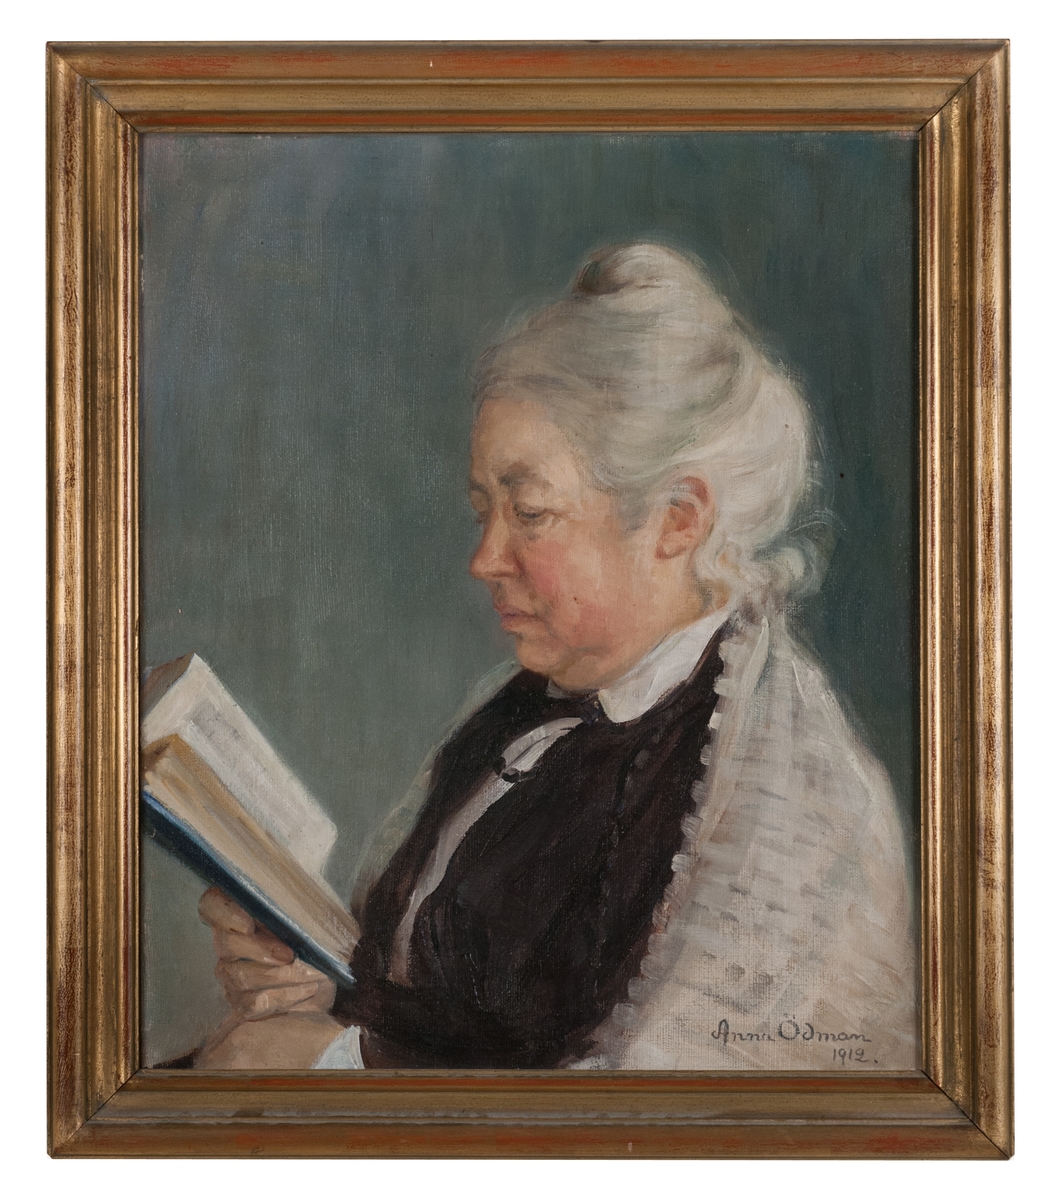 Målning, porträtt av Anna Ödman föreställande konstnärens mor Linnéa Ödman.
Förgylld träram.